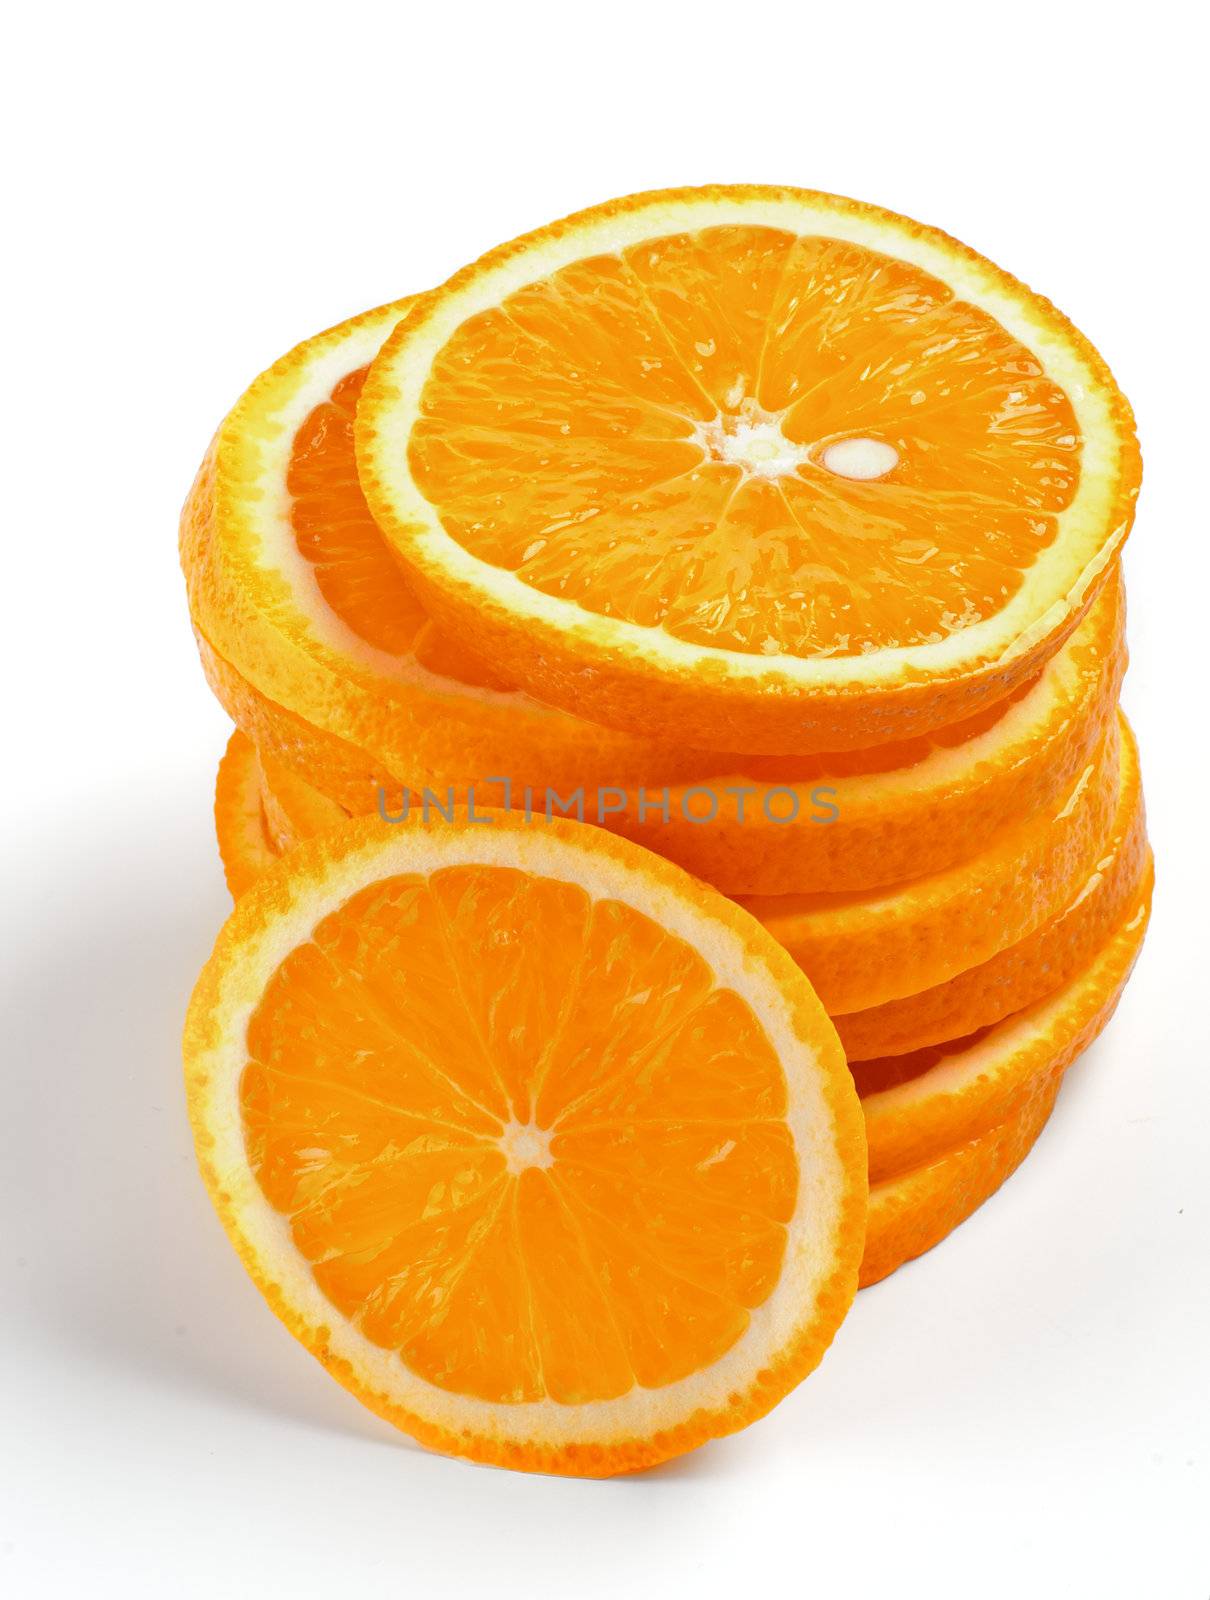 Stack of Fresh Ripe Orange Lobules isolated on white background